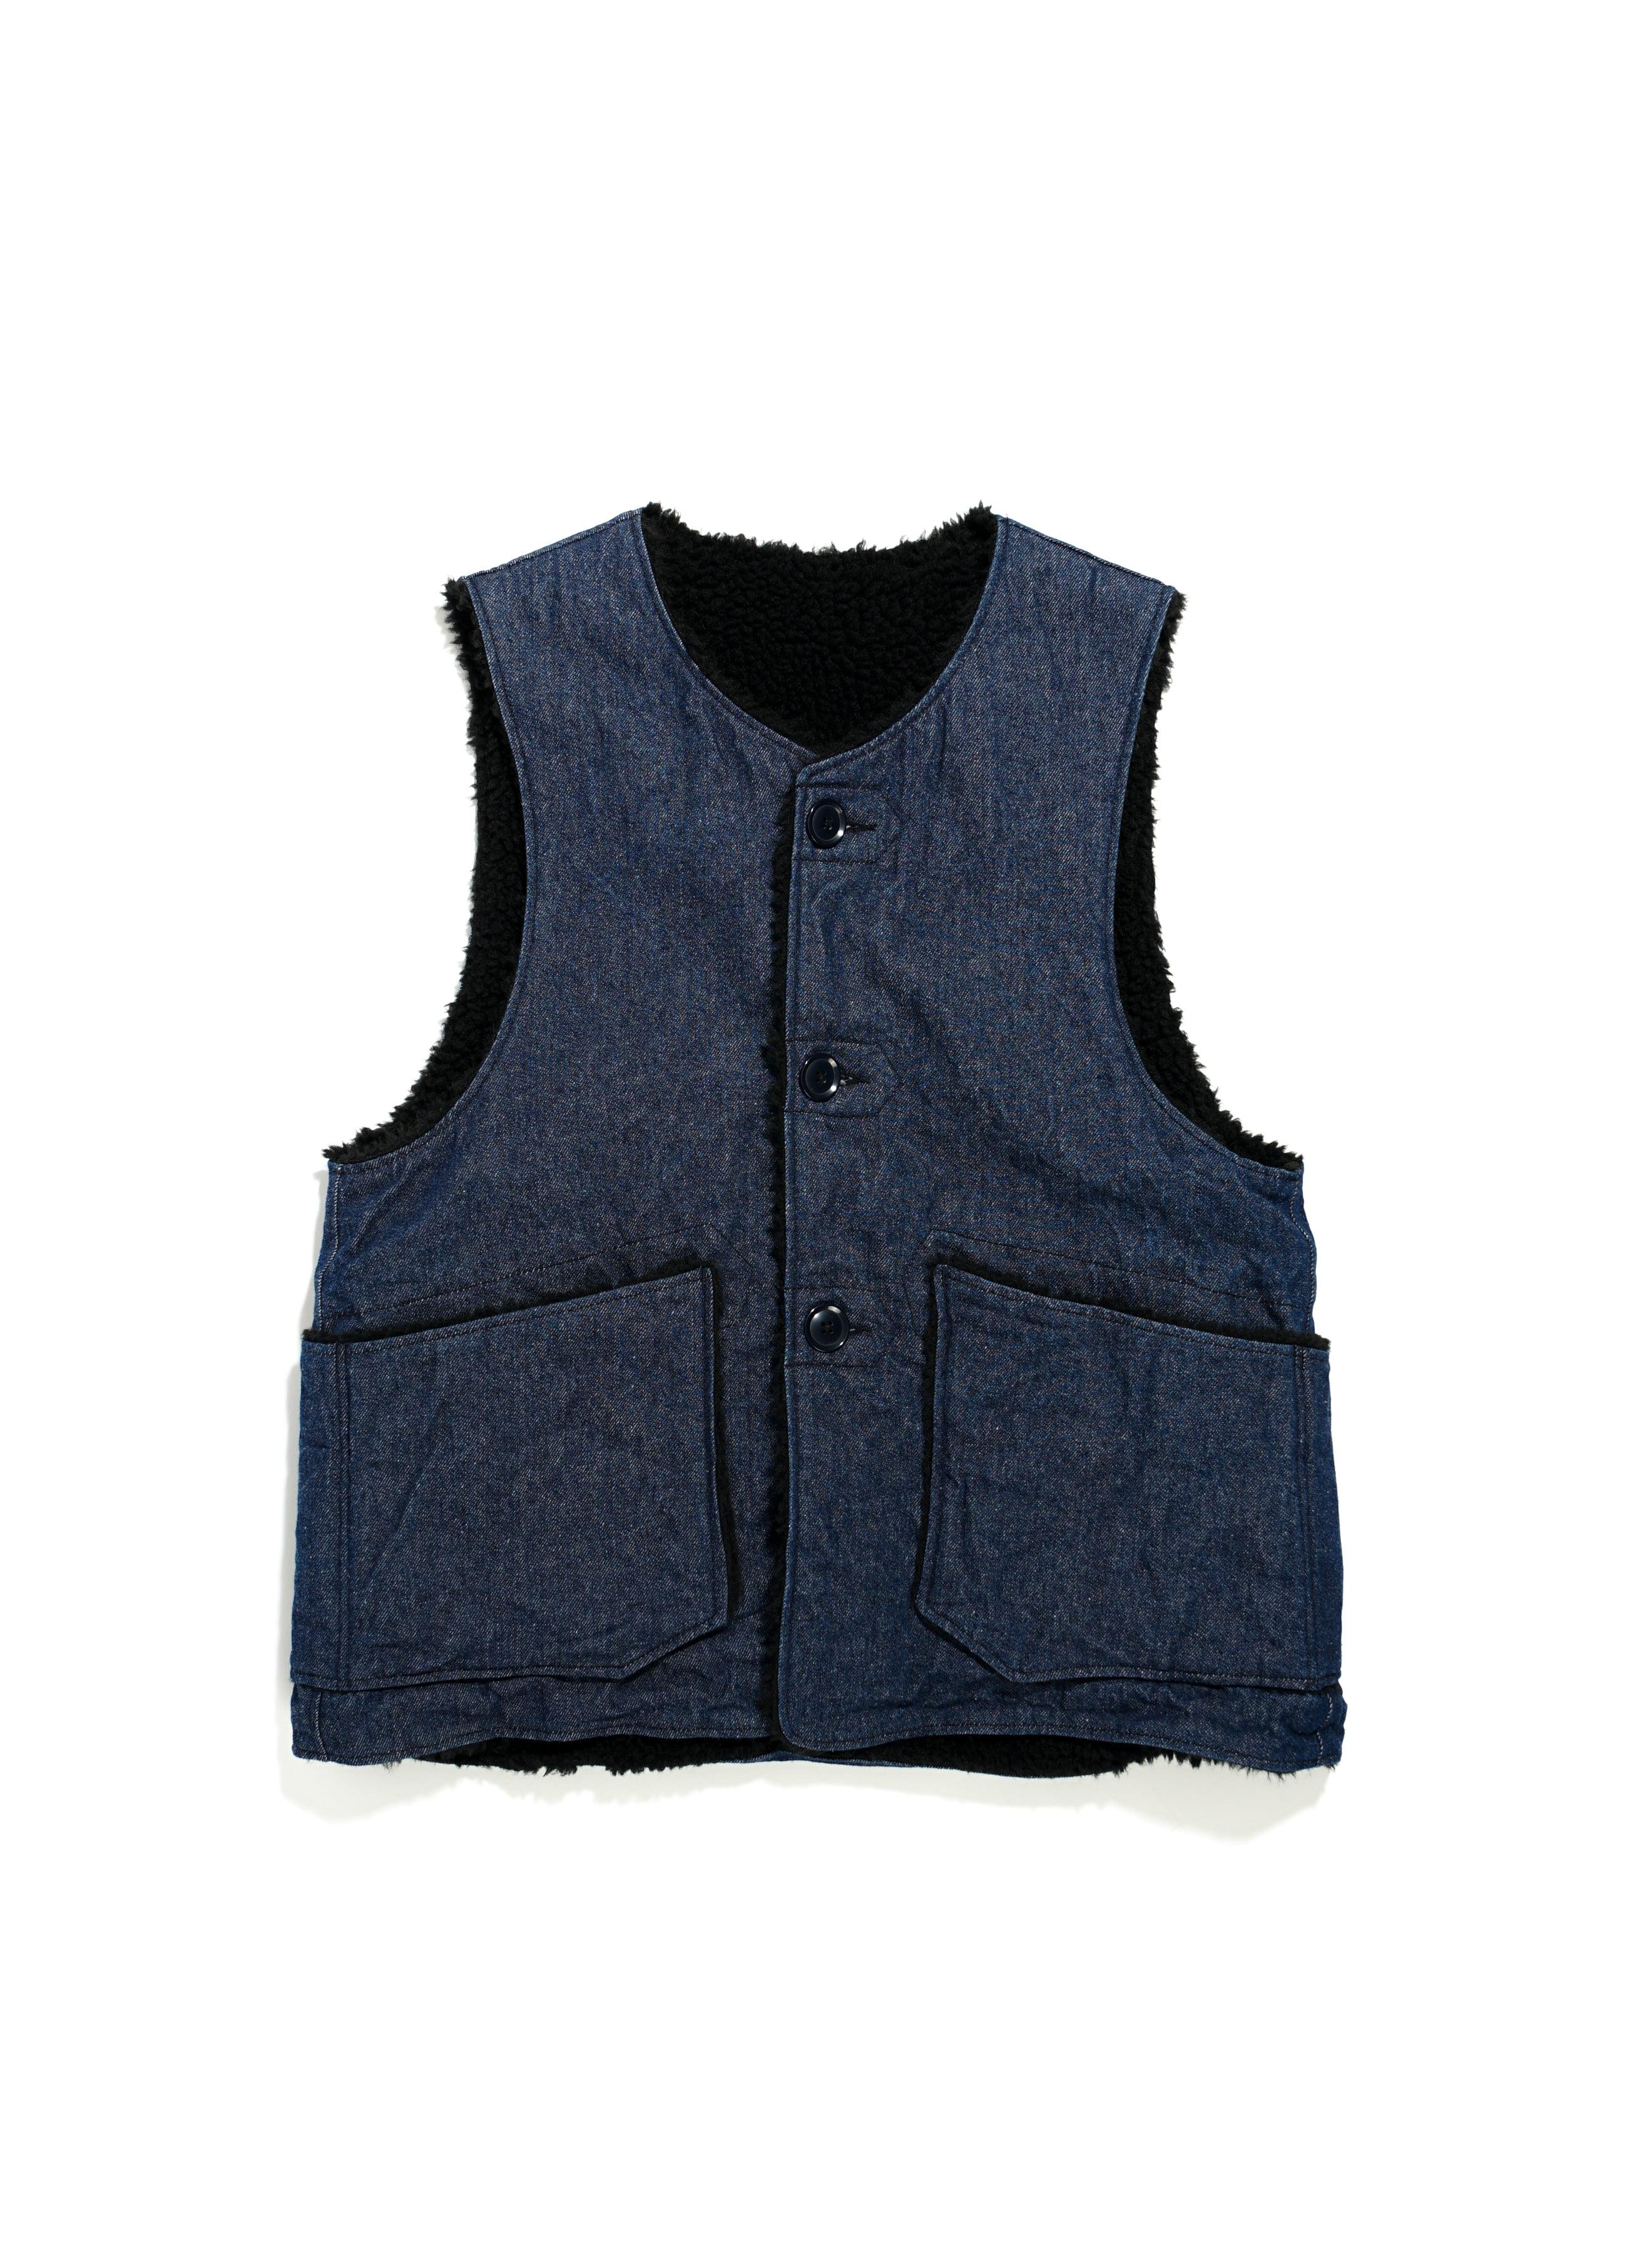 13300円高級品販売 大阪販売中 Engineered Garments Over Vest